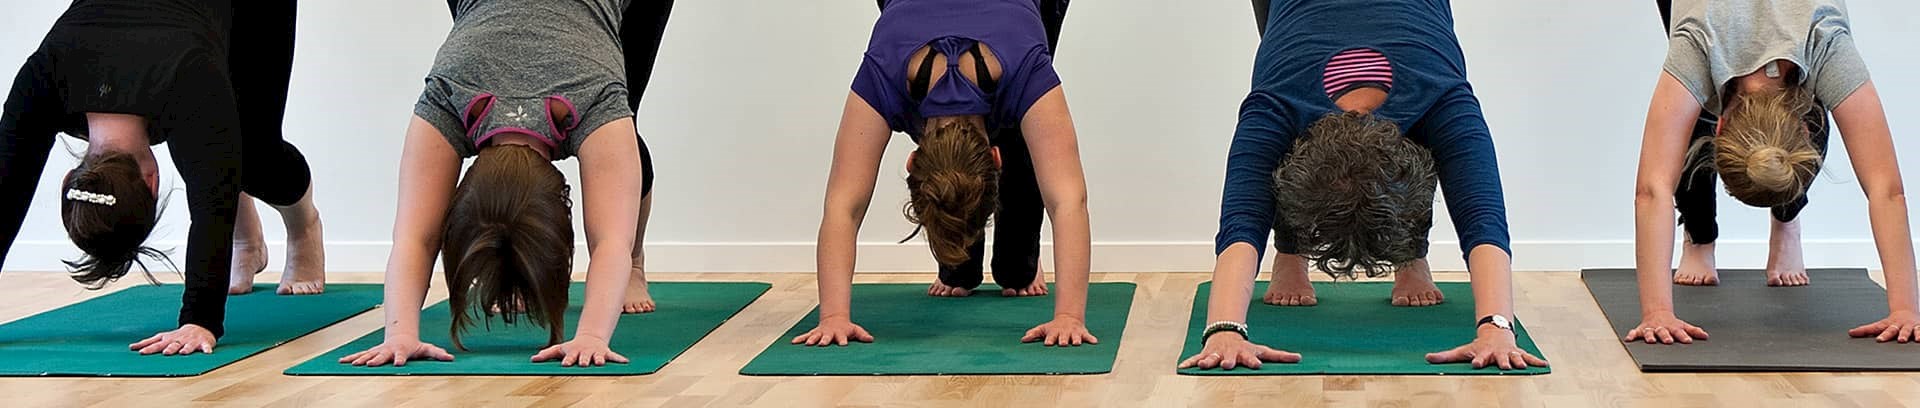 Kursus i mindful yoga, underviser Laila Elisabeth Møller-Rasmussen ved FOF Aarhus